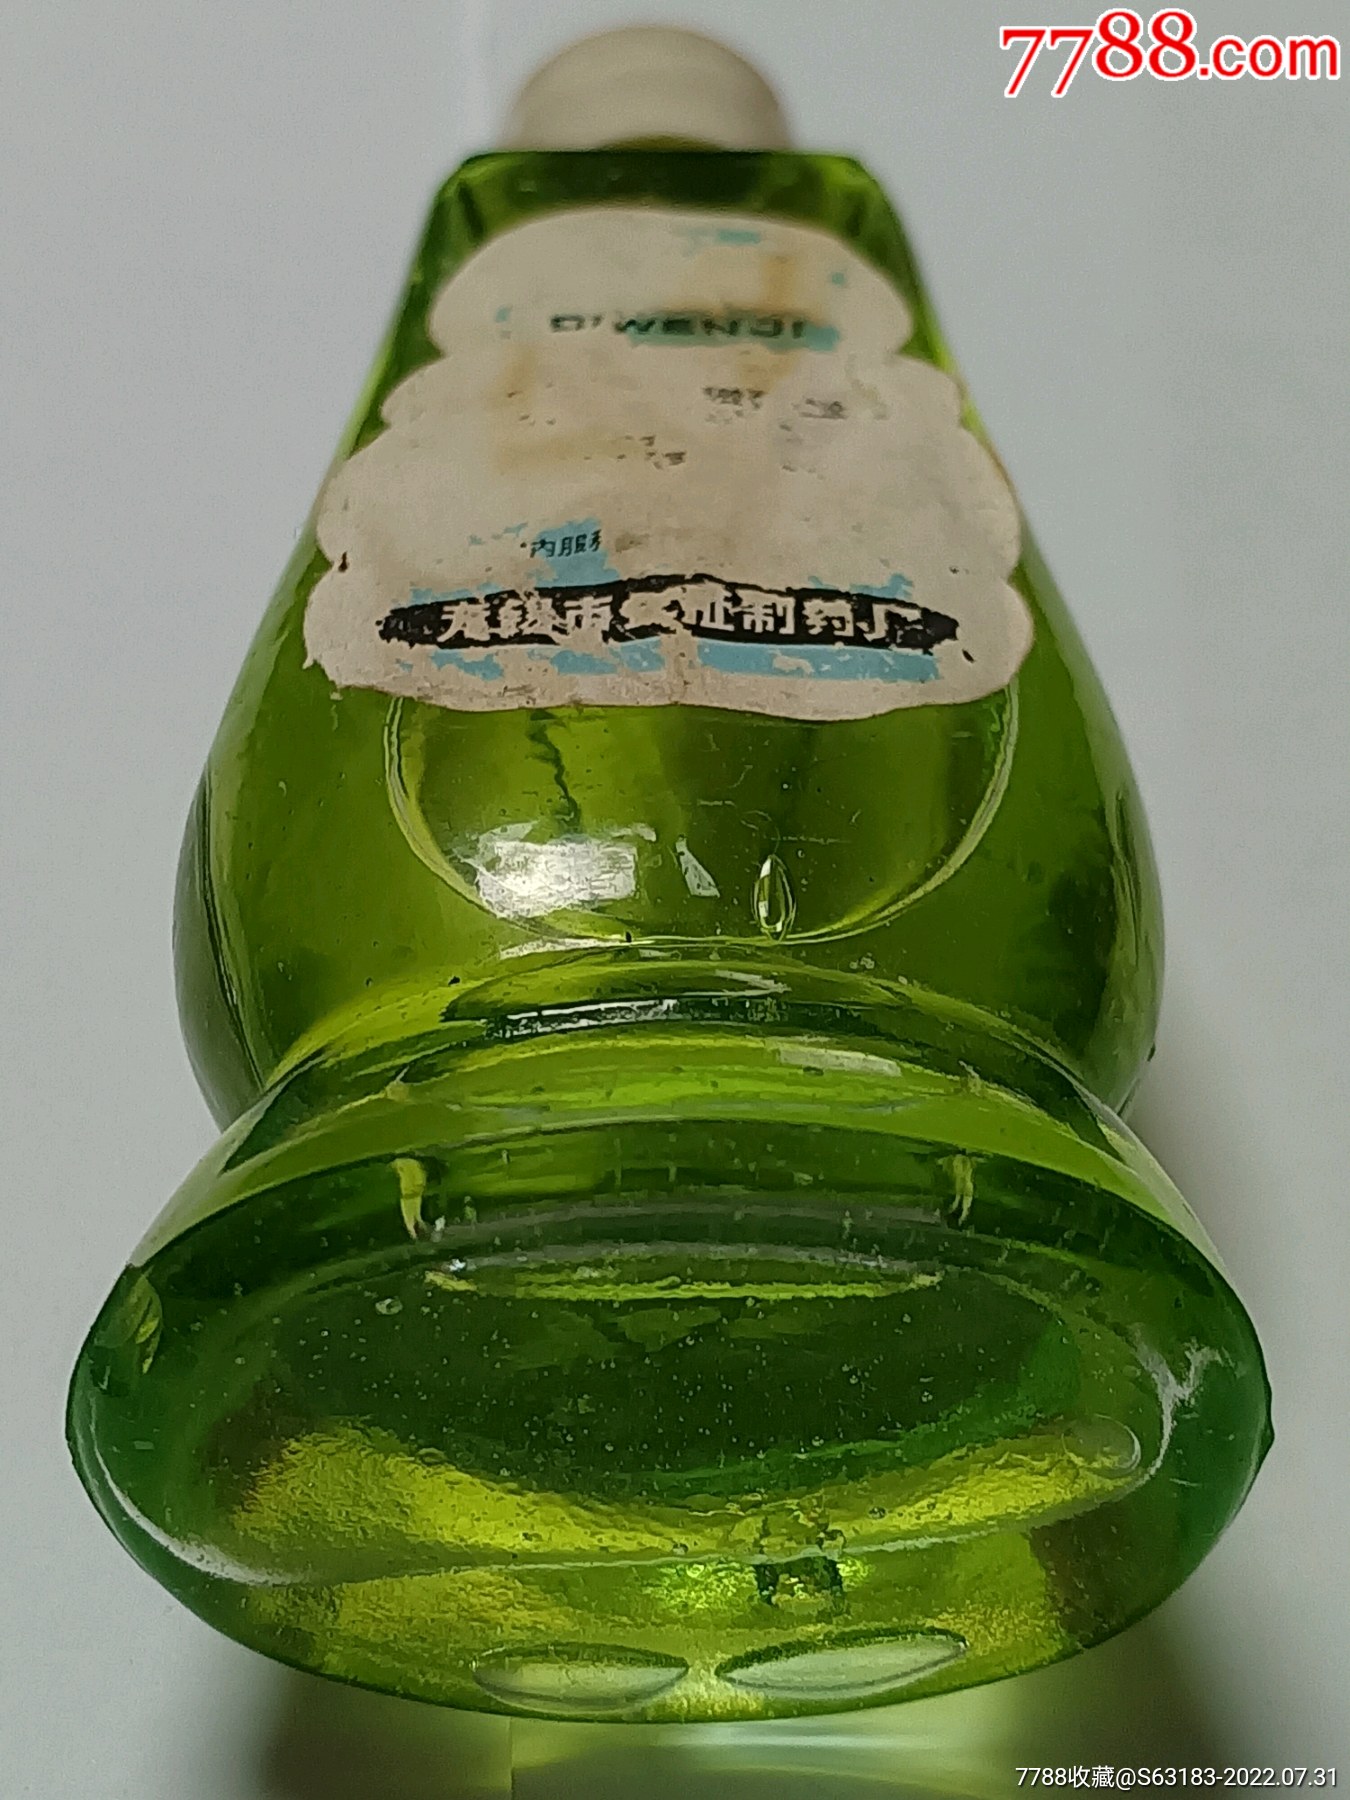 八十年代(中国最早的)无锡市产止痒水(库存一瓶未使用)(具有划时代